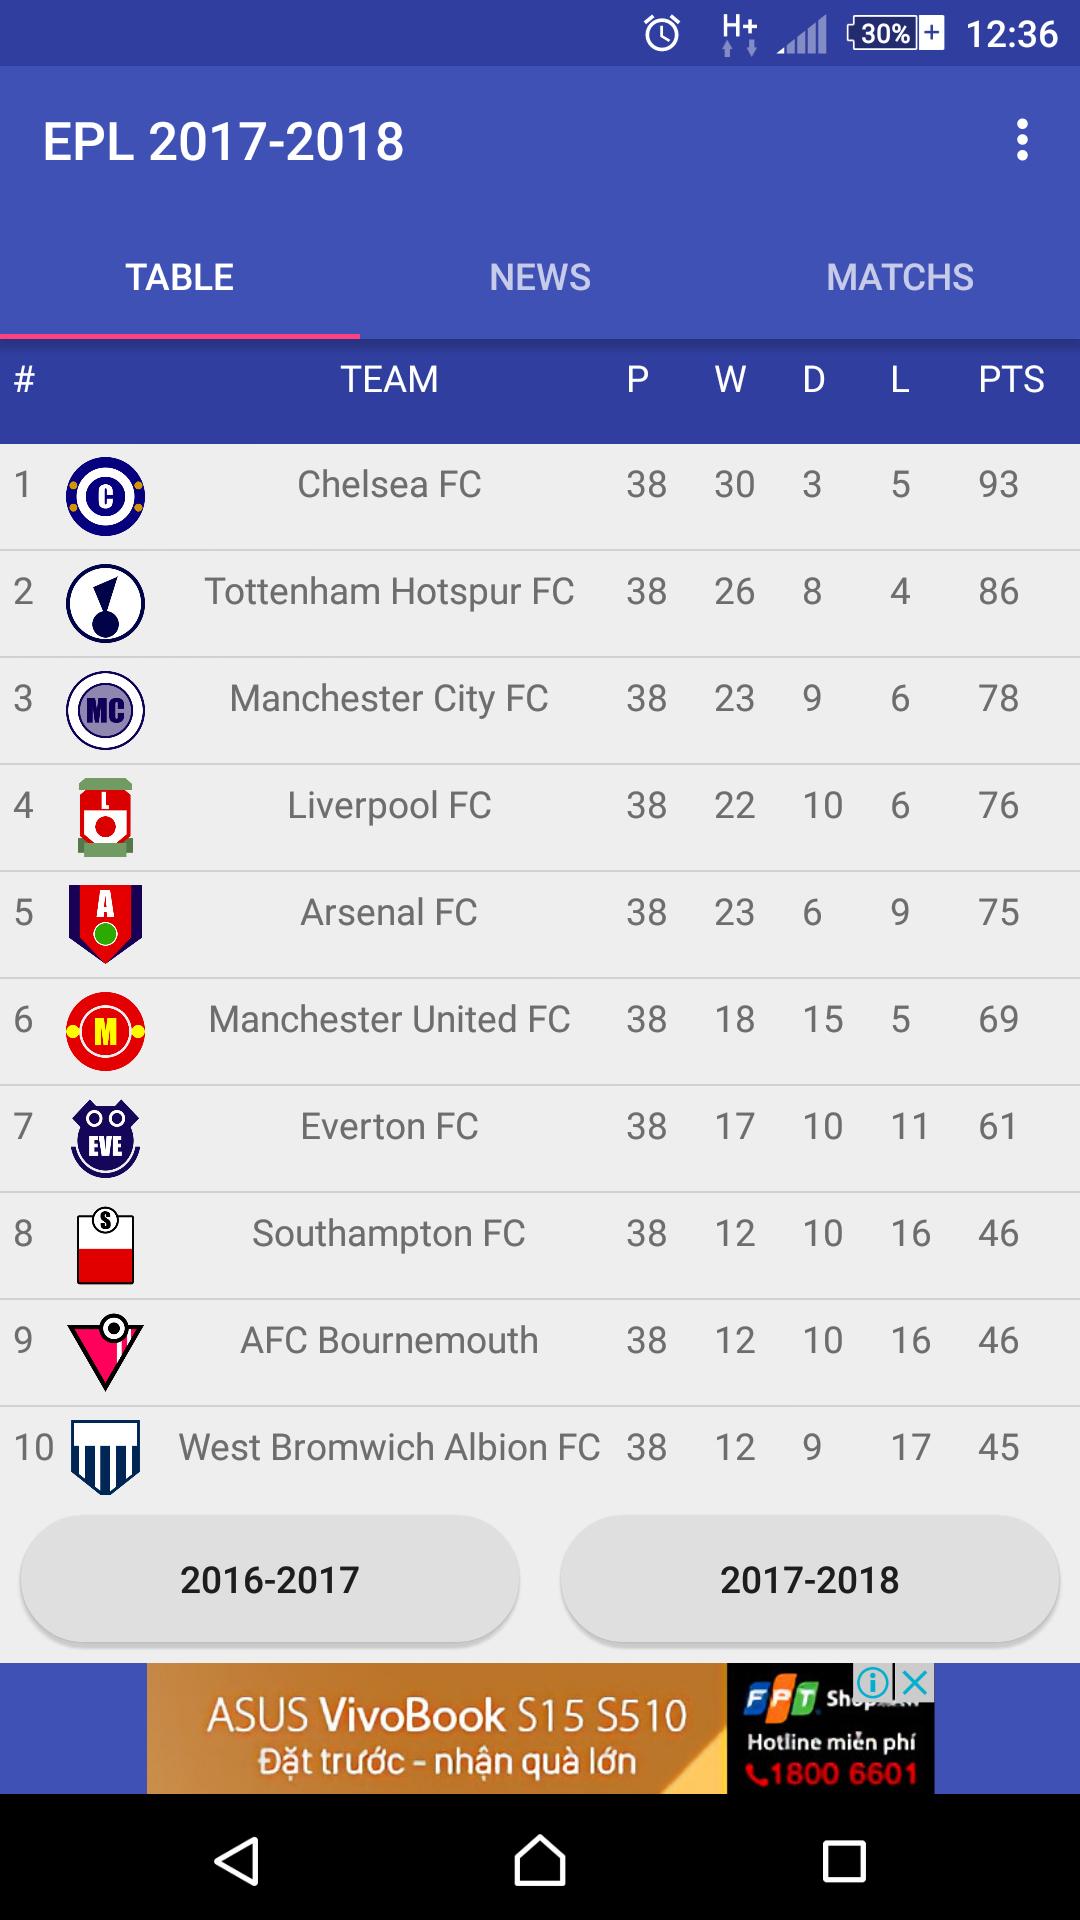 Premier League table 2017/18 APK pour Android Télécharger